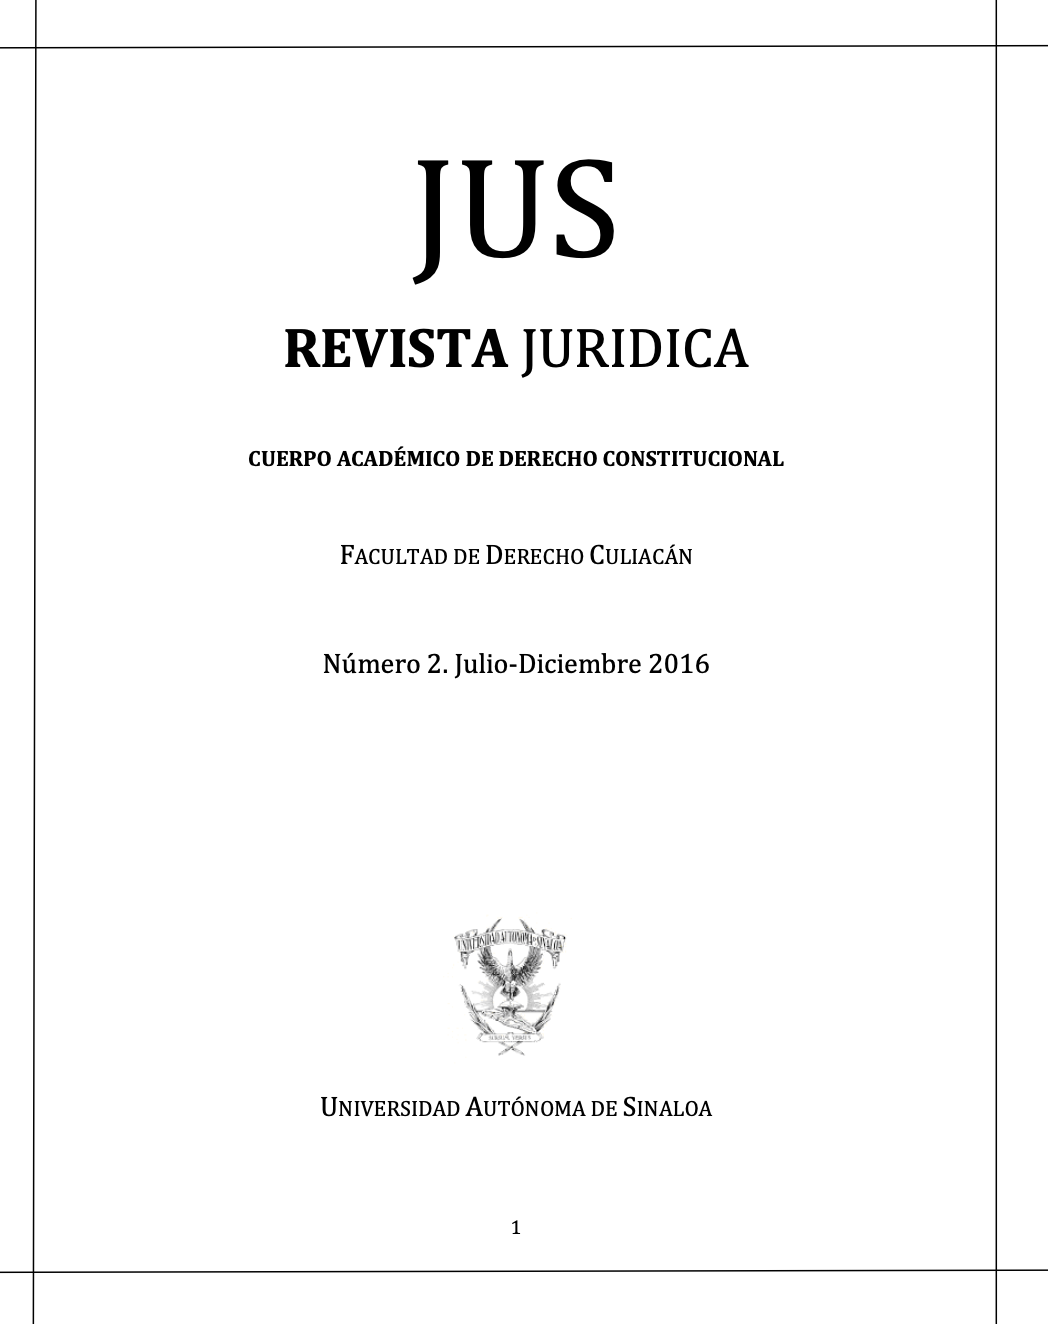 Portada JUS Revista Jurídica Cuerpo Académico de Derecho Constitucional Facultad de Derecho Culiacán